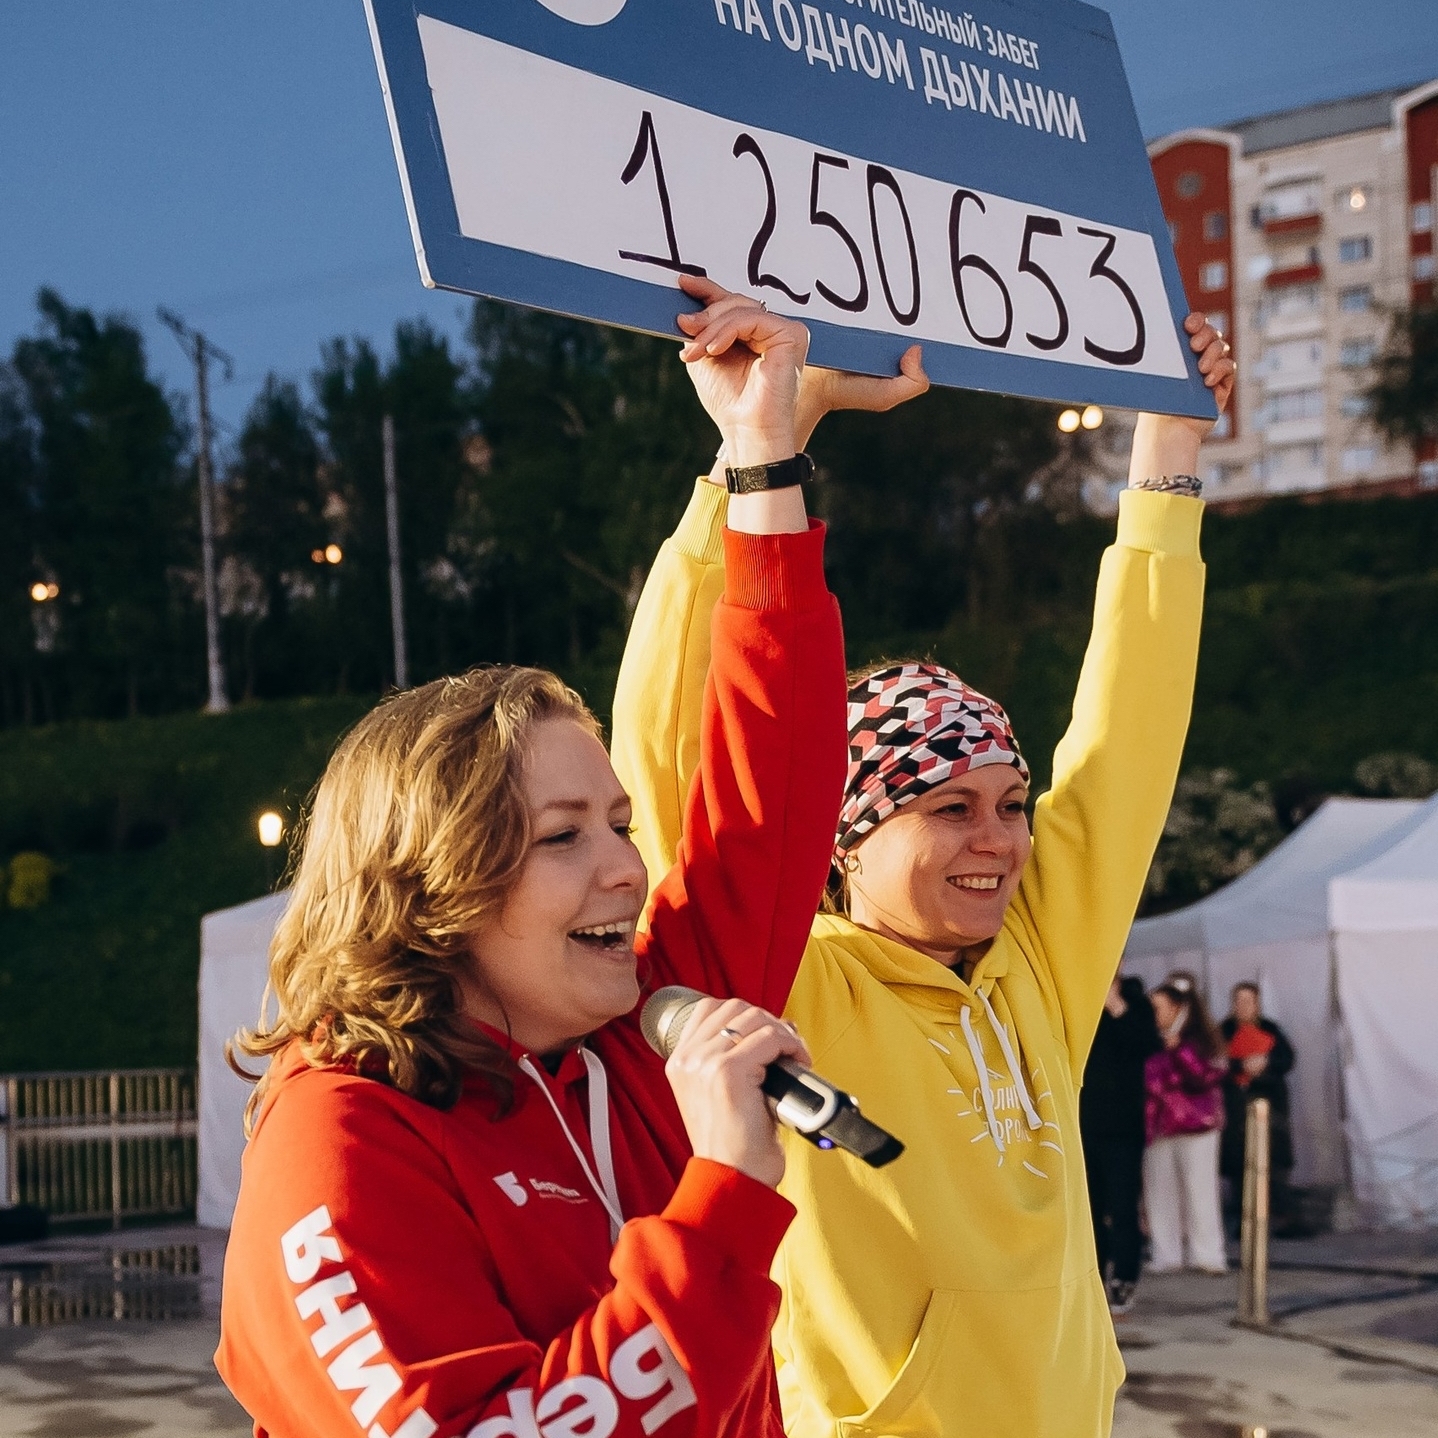 Участники забега «На одном дыхании» подарили детям 1 млн 250 тыс. рублей